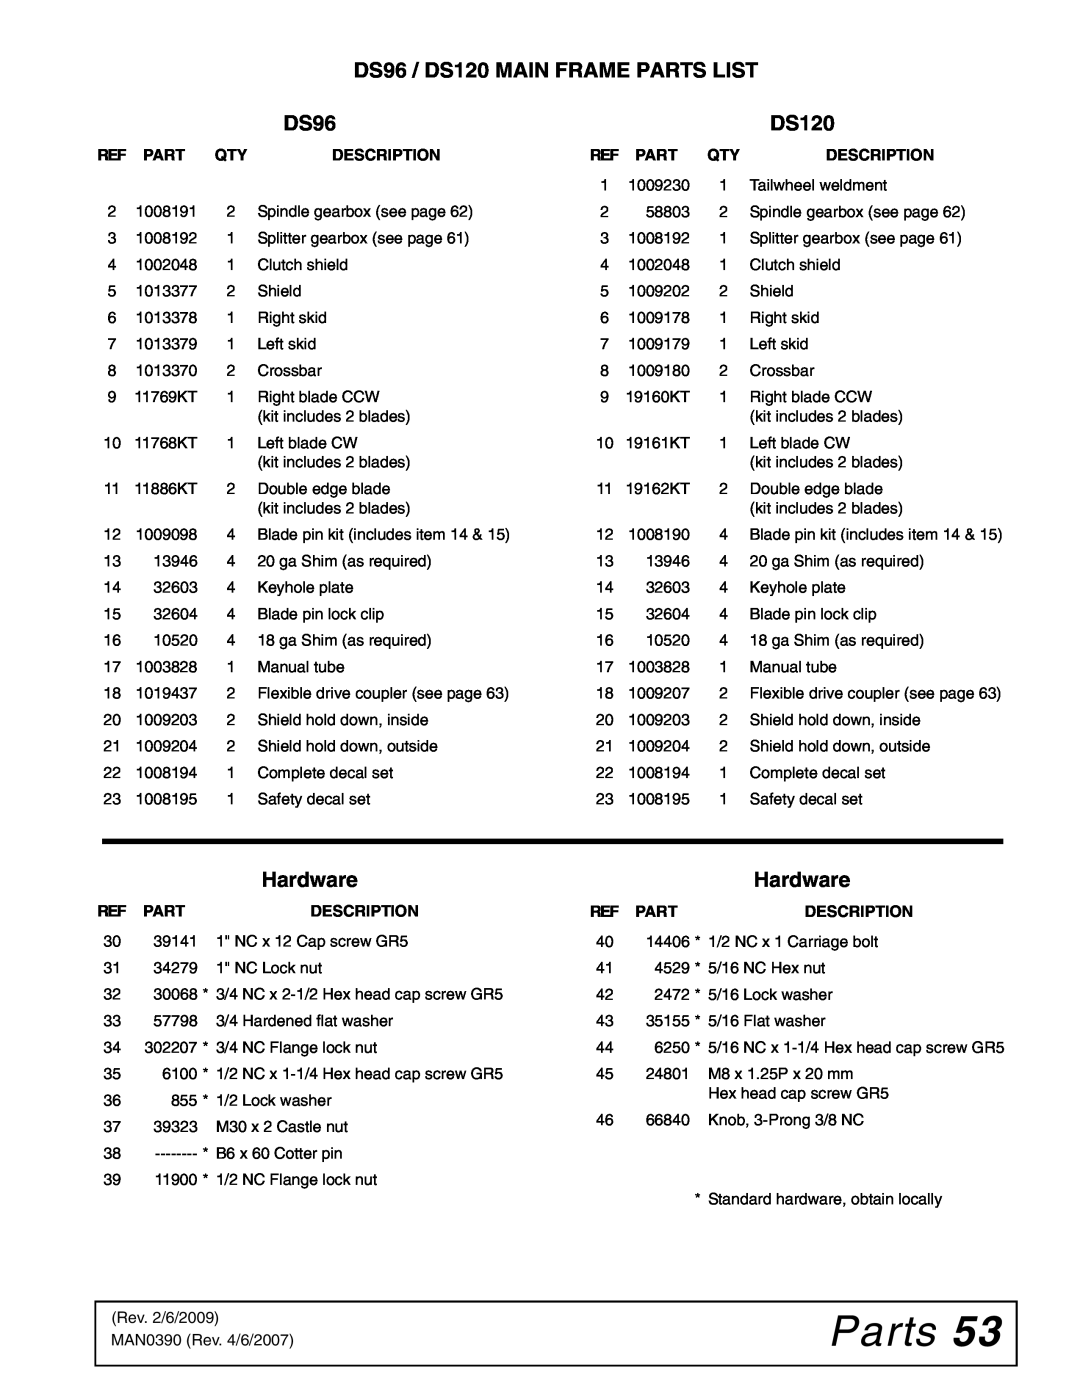 Woods Equipment manual Parts, DS96 / DS120 MAIN FRAME PARTS LIST, Hardware, Description 